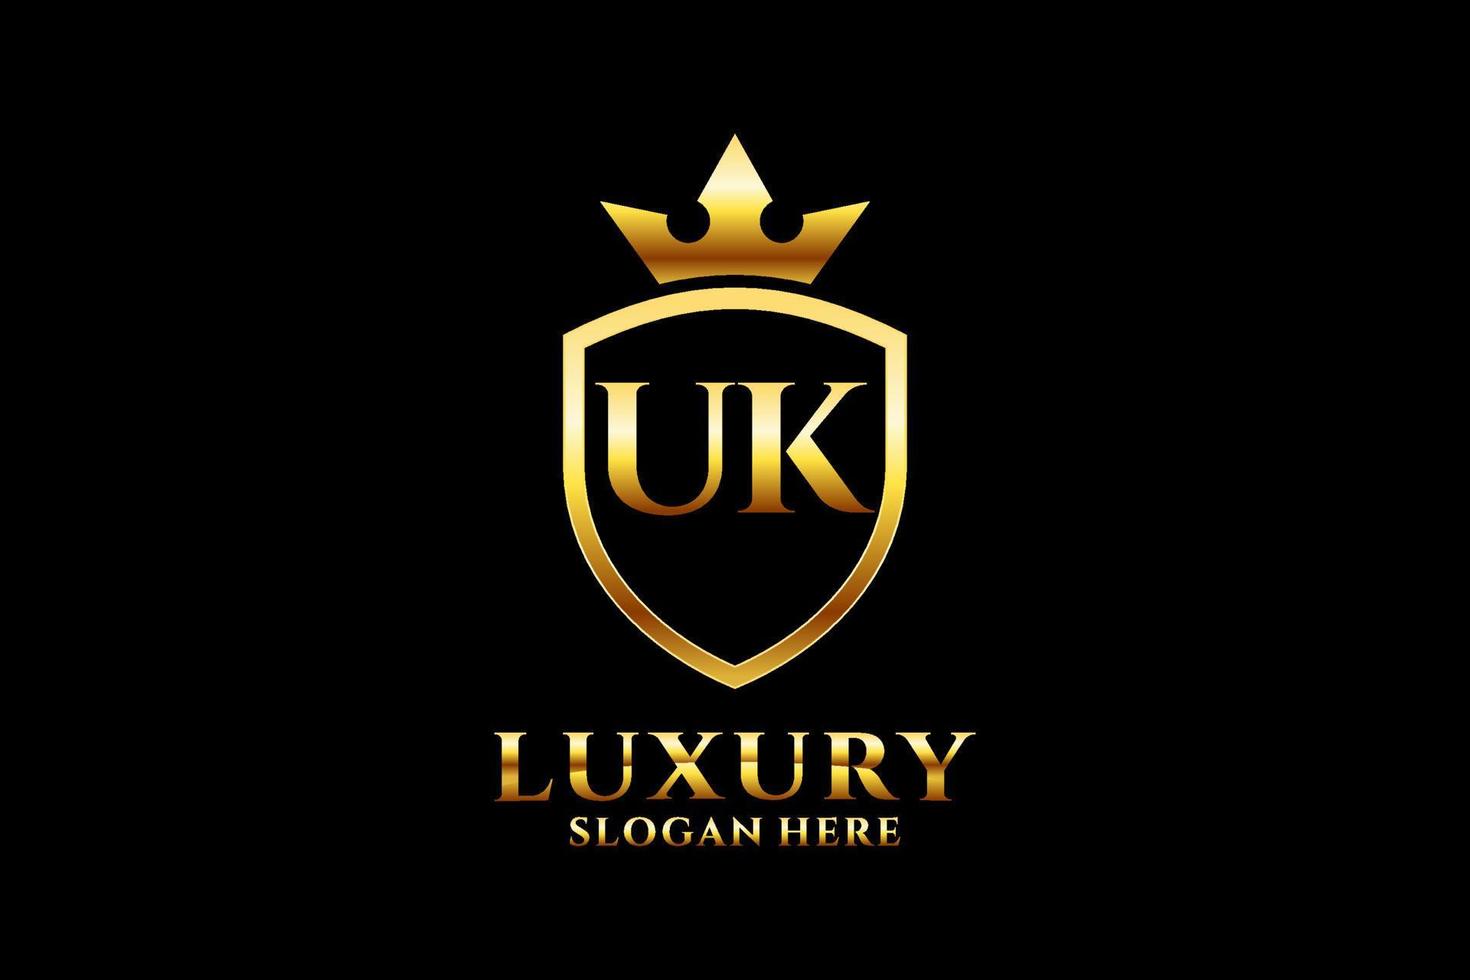 Initial UK elegantes Luxus-Monogramm-Logo oder Abzeichen-Vorlage mit Schriftrollen und Königskrone – perfekt für luxuriöse Branding-Projekte vektor